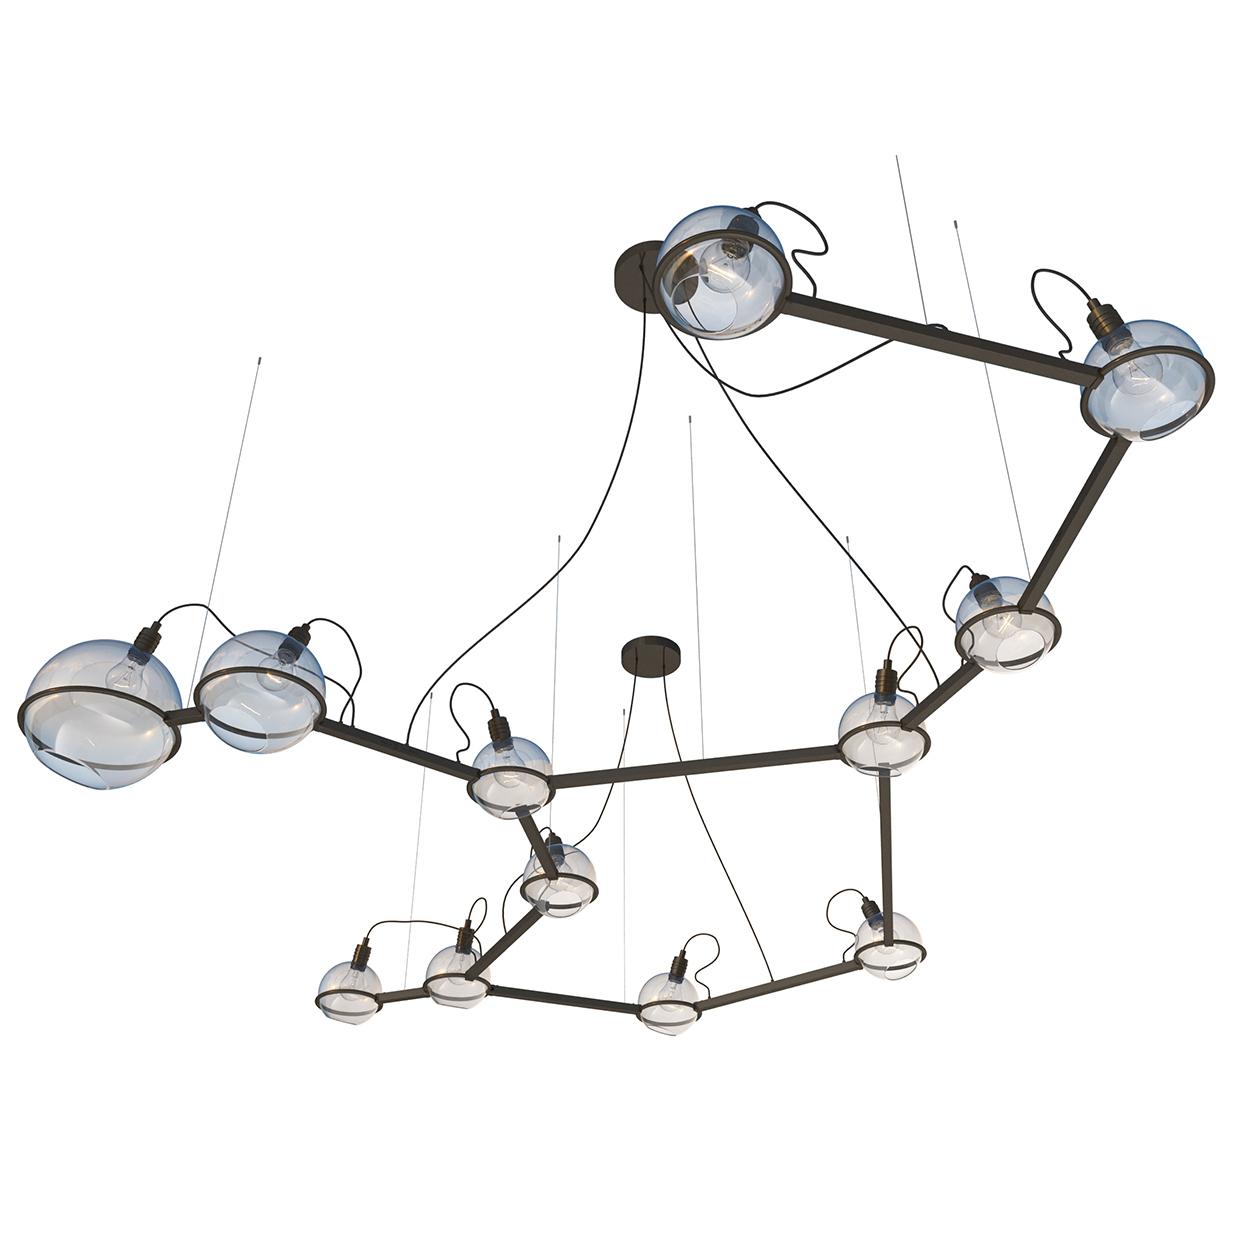 Centaurus lamp, SKU. 20921 by Pikartlights 3d model